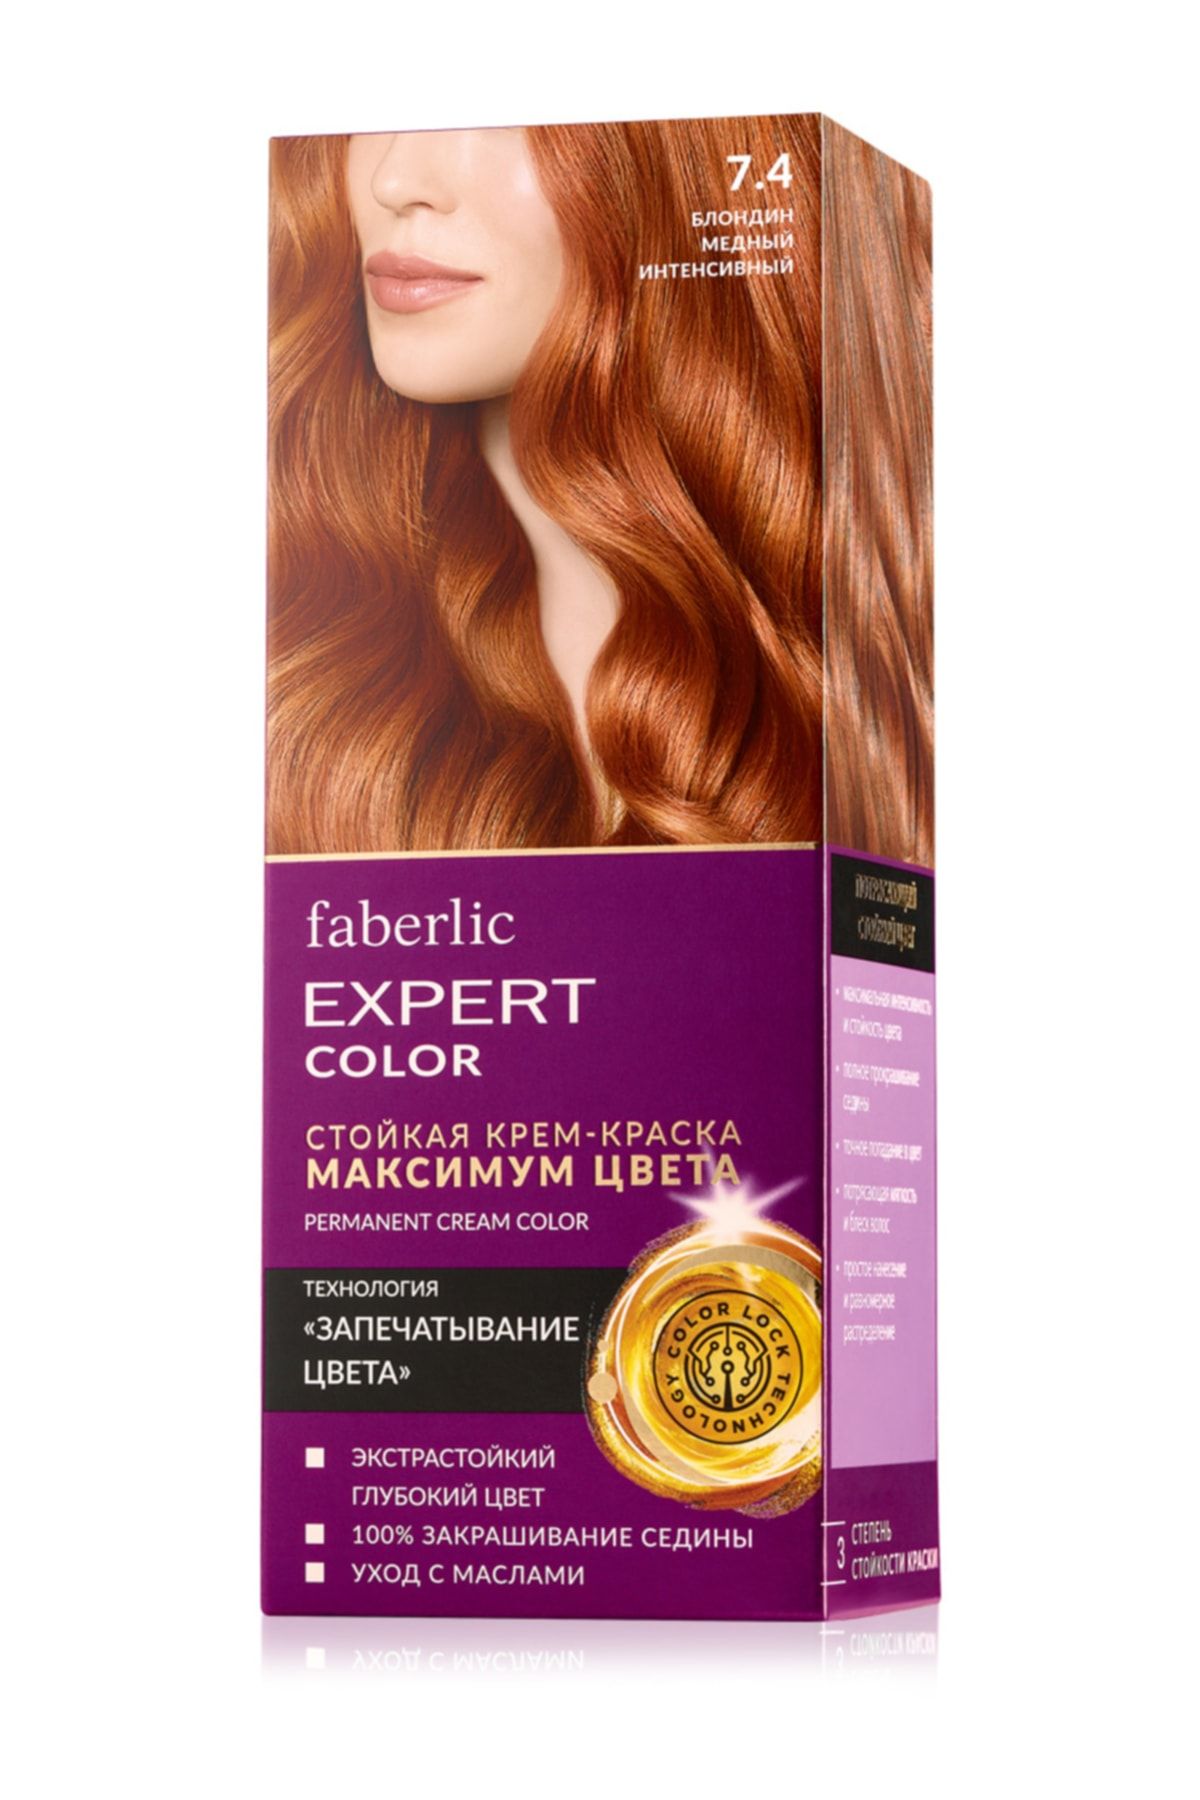 Фаберлик краска для волос эксперт. Faberlic Expert Color краска для волос палитра. Фаберлик краска для волос эксперт оттенок 3.0. Краска для волос Фаберлик эксперт колор. Краска для волос Фаберлик эксперт колор 6.34.